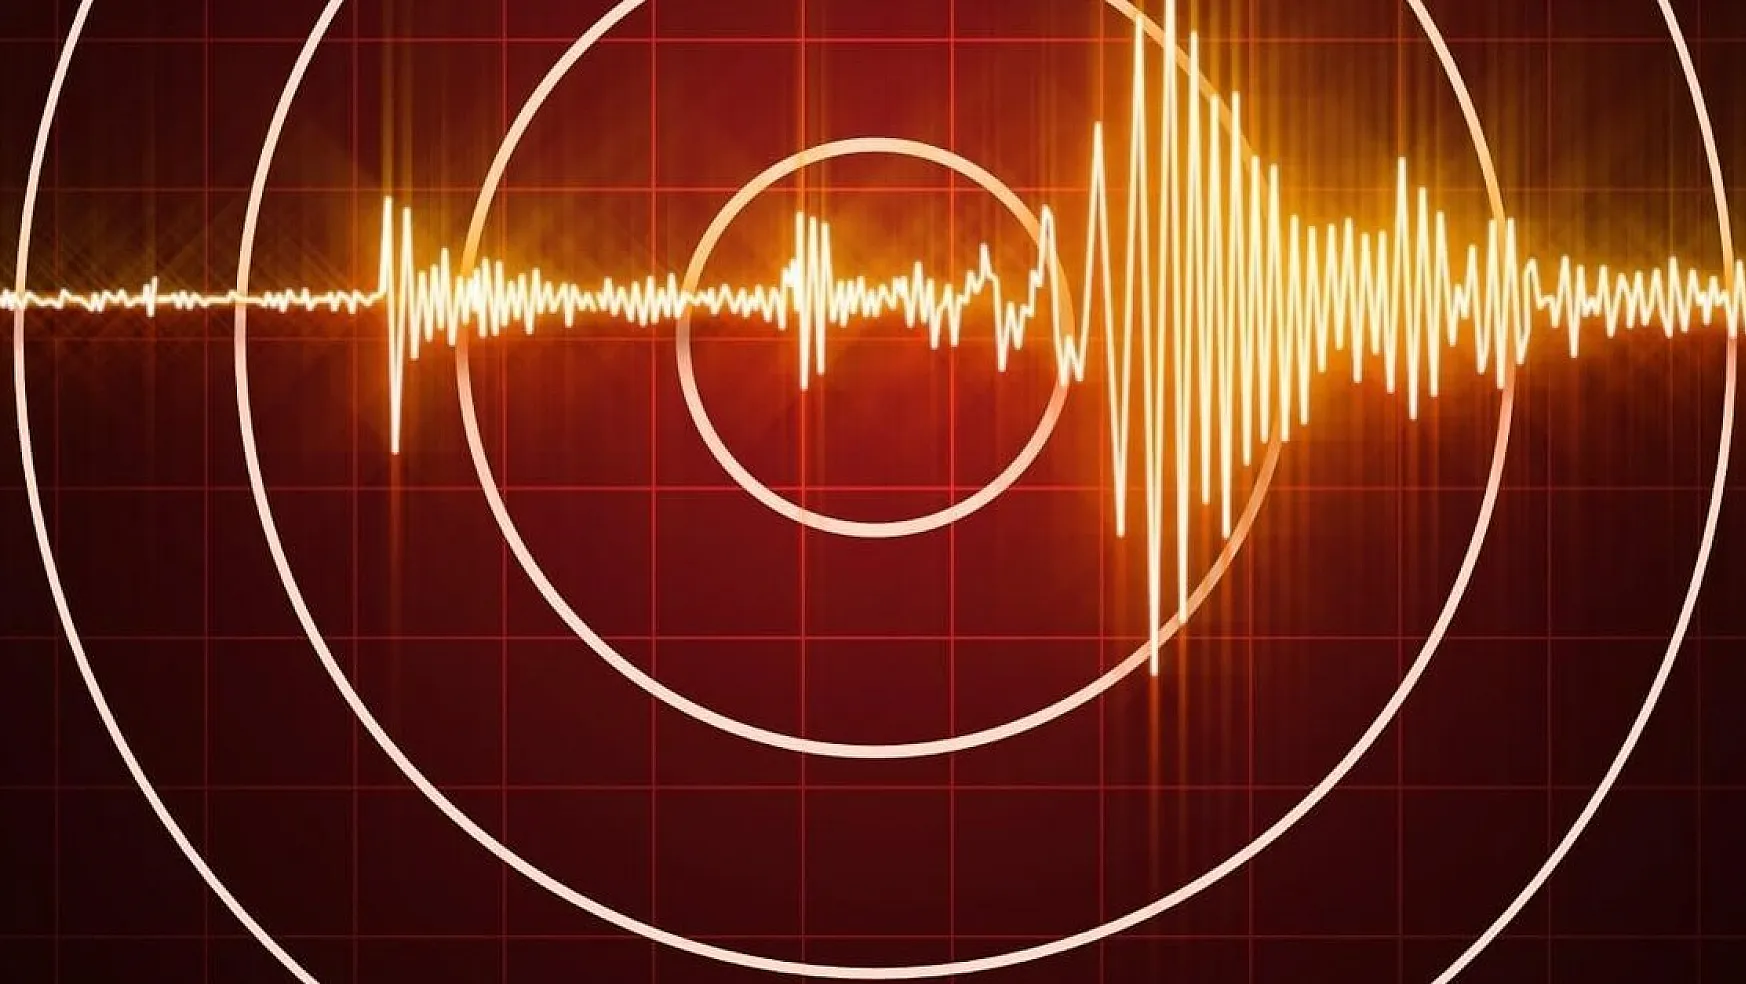 Yunanistan'da 2 Büyük Deprem Daha Oldu